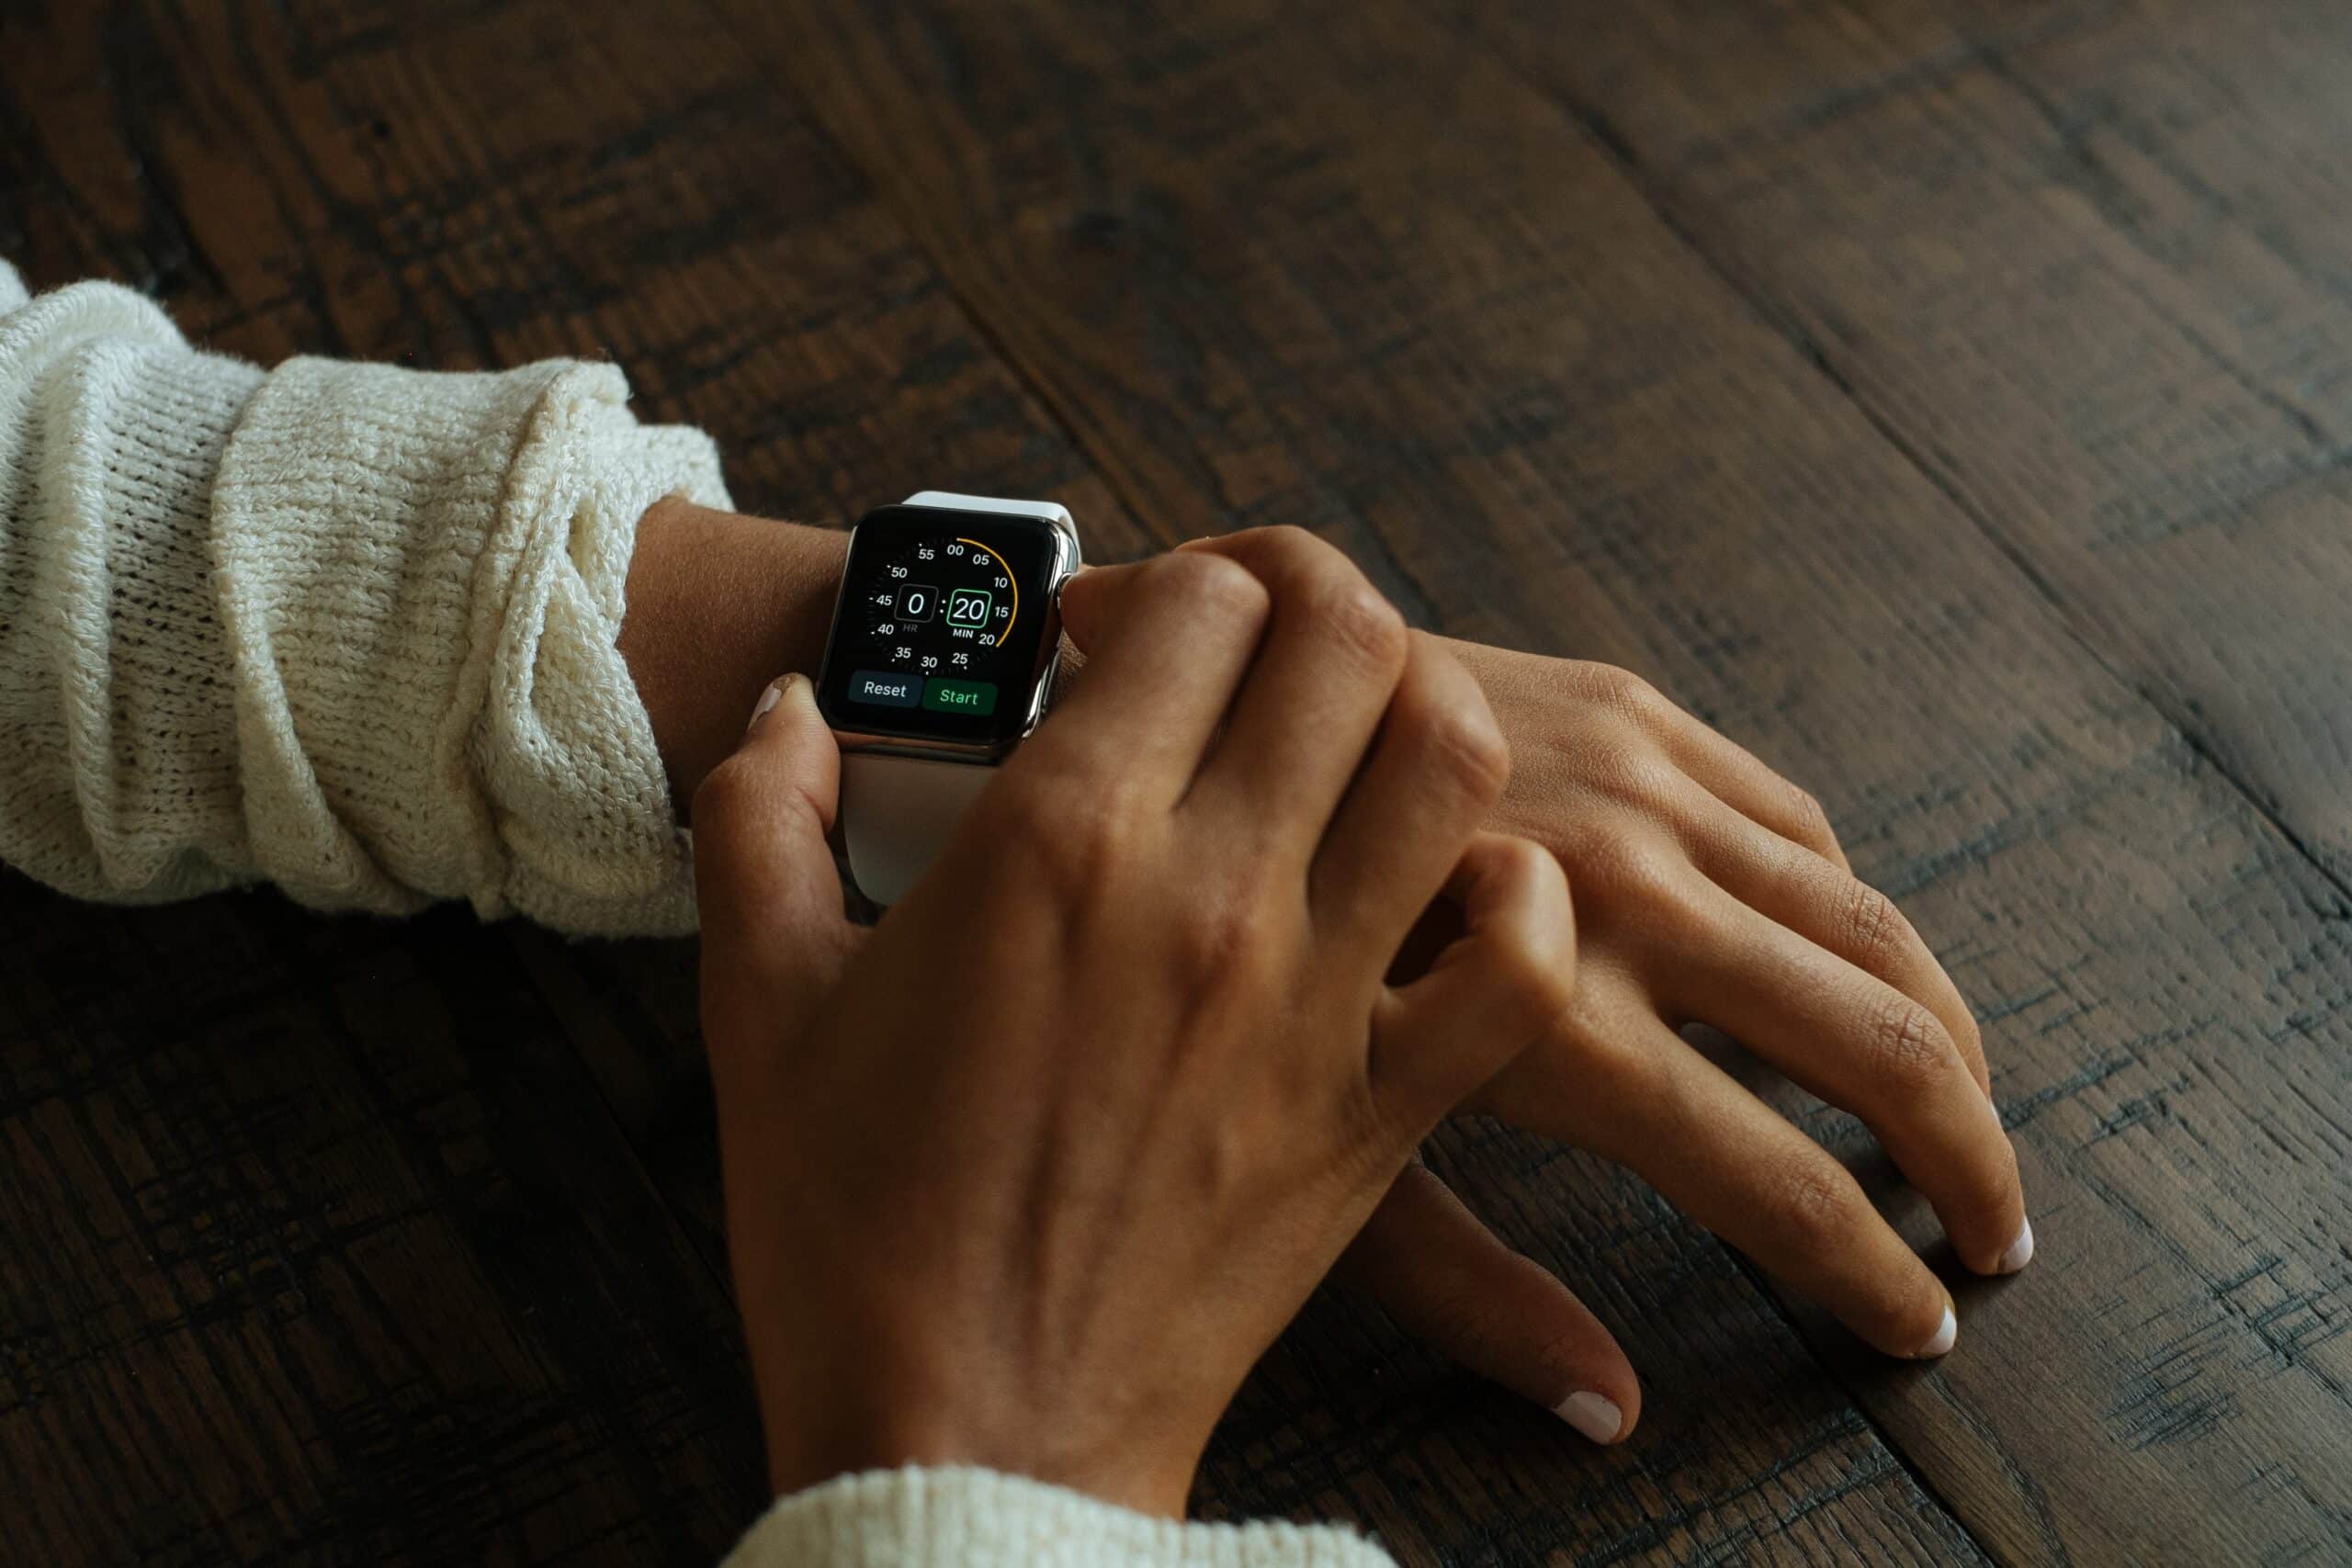 Widgets auf der Apple Watch